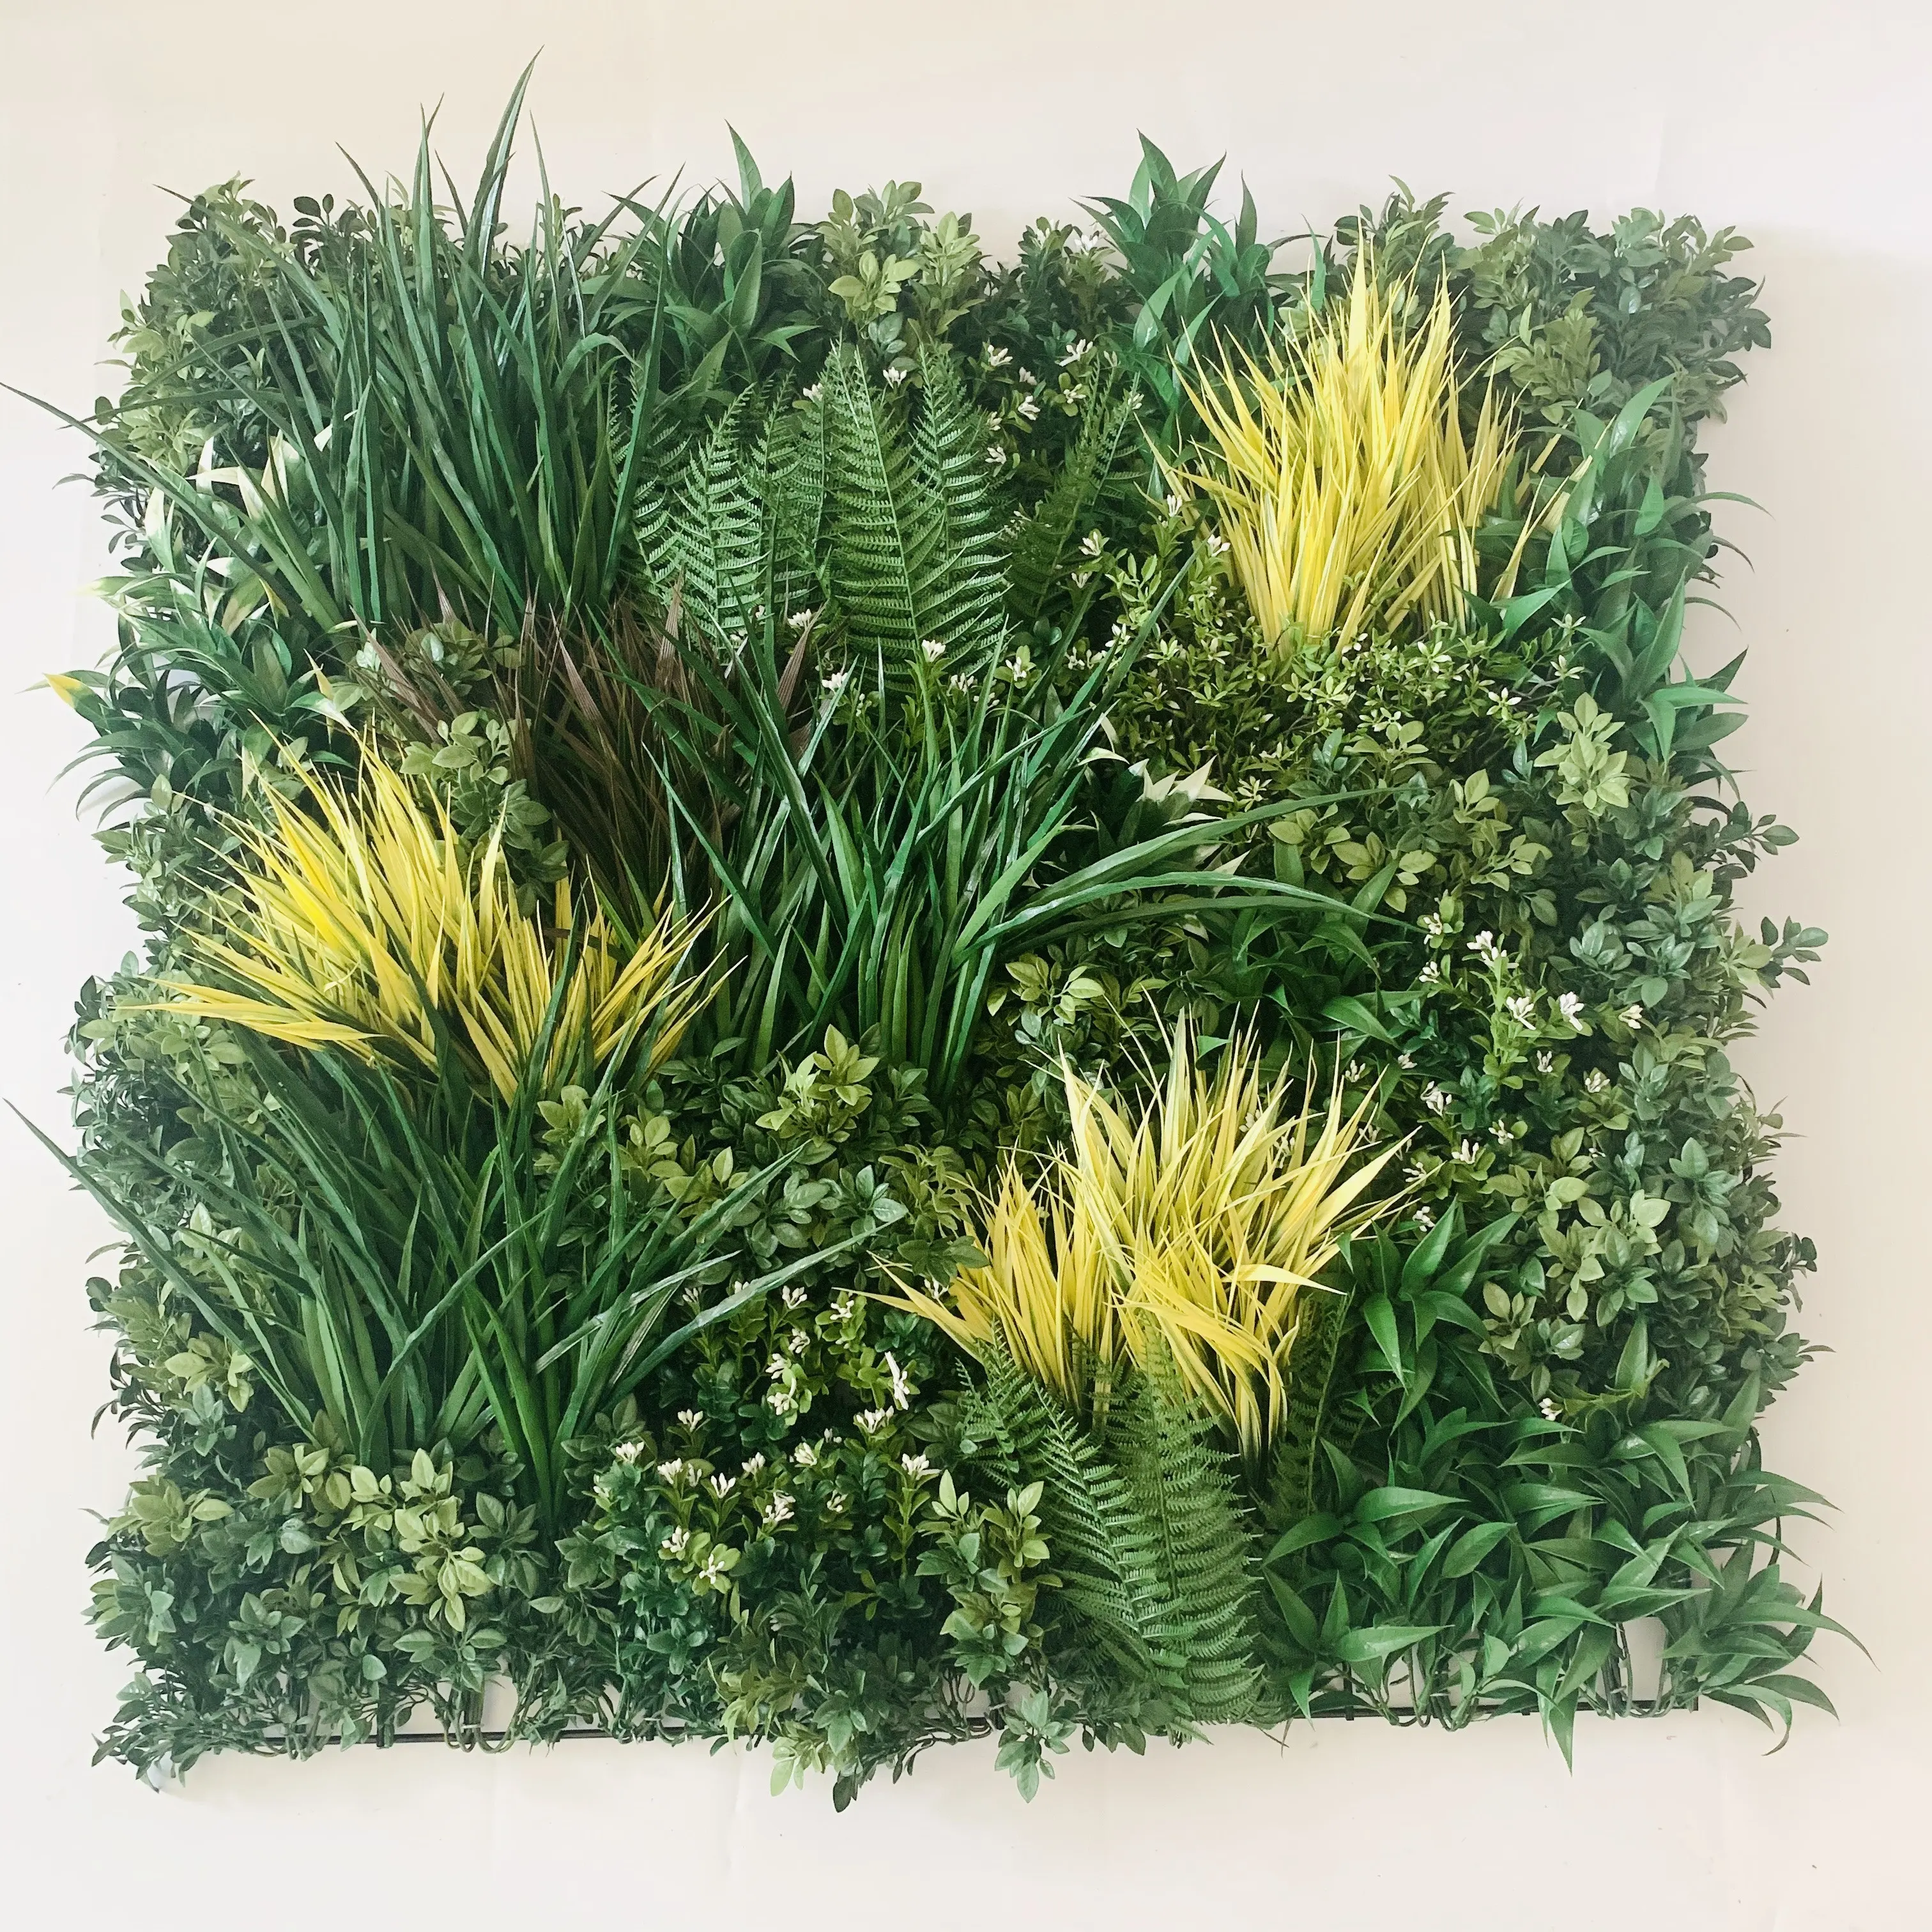 Pflanzen künstliche grüne wand Vertikale Anlage Teppich Indoor Hause Decor Hedge Dekorative Moos Panel Natürliche Außen Grüne Wand